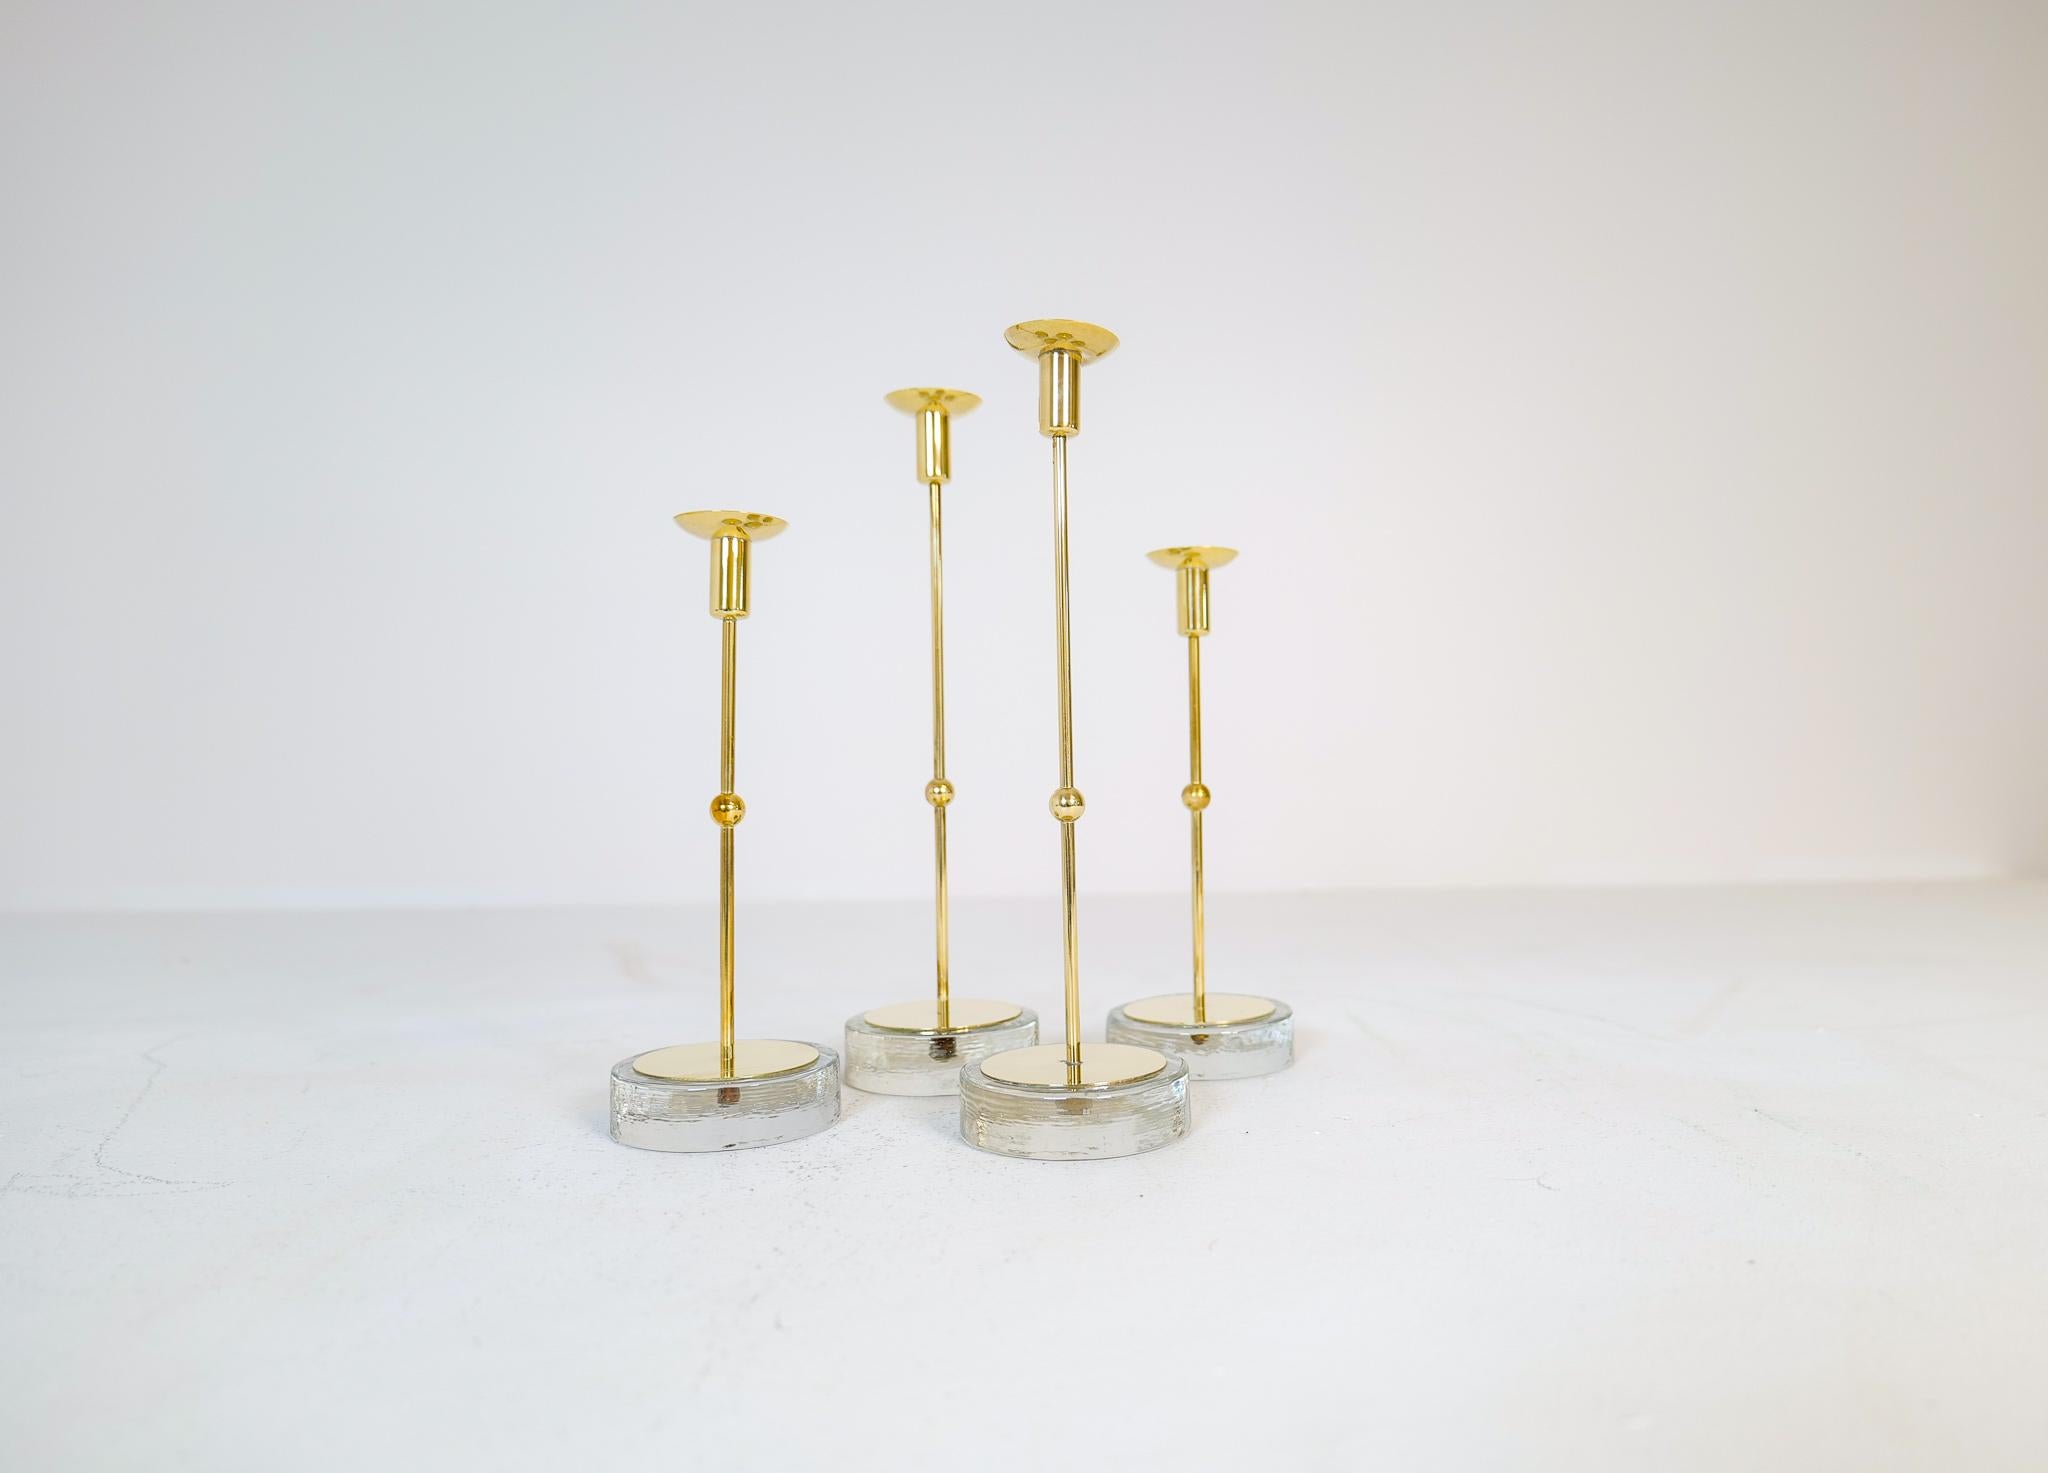 Dieses Set aus 4 Kerzenhaltern wurde in den 1950er Jahren in Schweden bei Ystad Metall und von Gunnar Ander entworfen. 
Der Sockel ist aus Glas und der Halter aus Messing. Die Stücke vermitteln den Eindruck von schwedischem, modernem Design. Sie